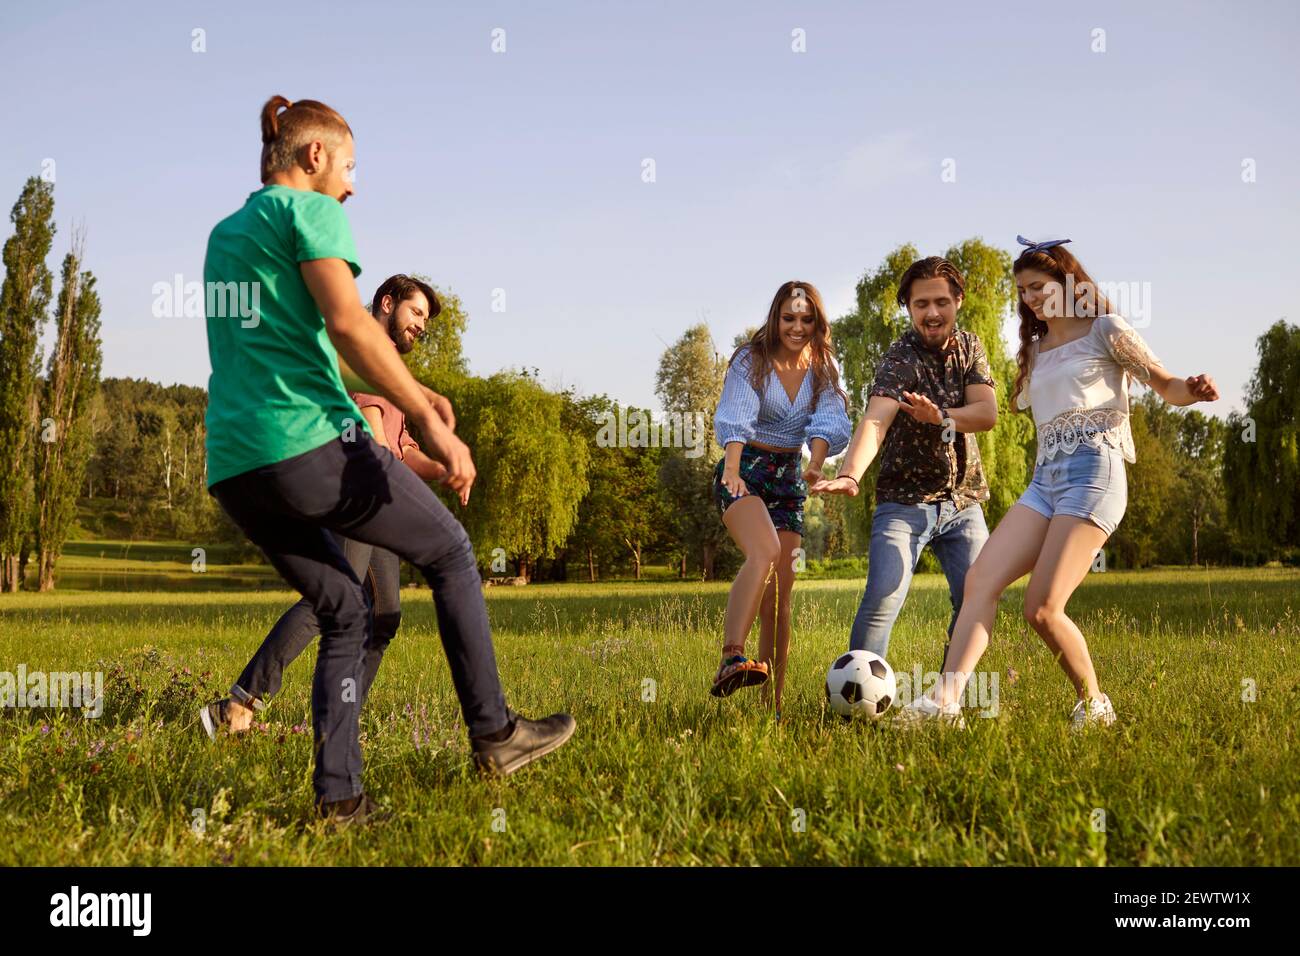 Glückliche Freunde haben Spaß beim aktiven Spielen im Park auf der grünen Wiese. Stockfoto